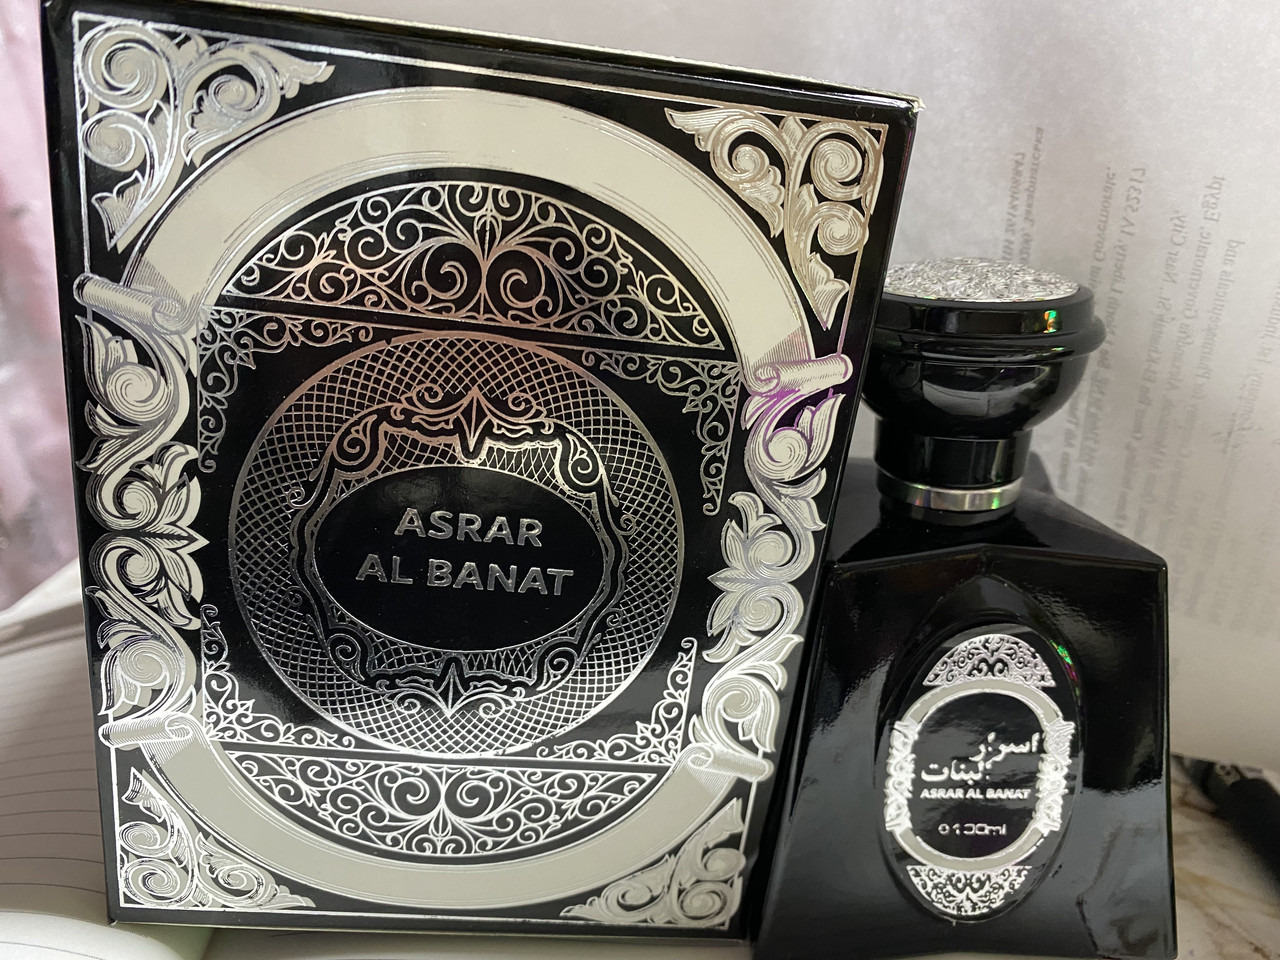 Східні парфуми Asrar Al Banat  фруктово-солодкий аромат 100 мл ОАЕ